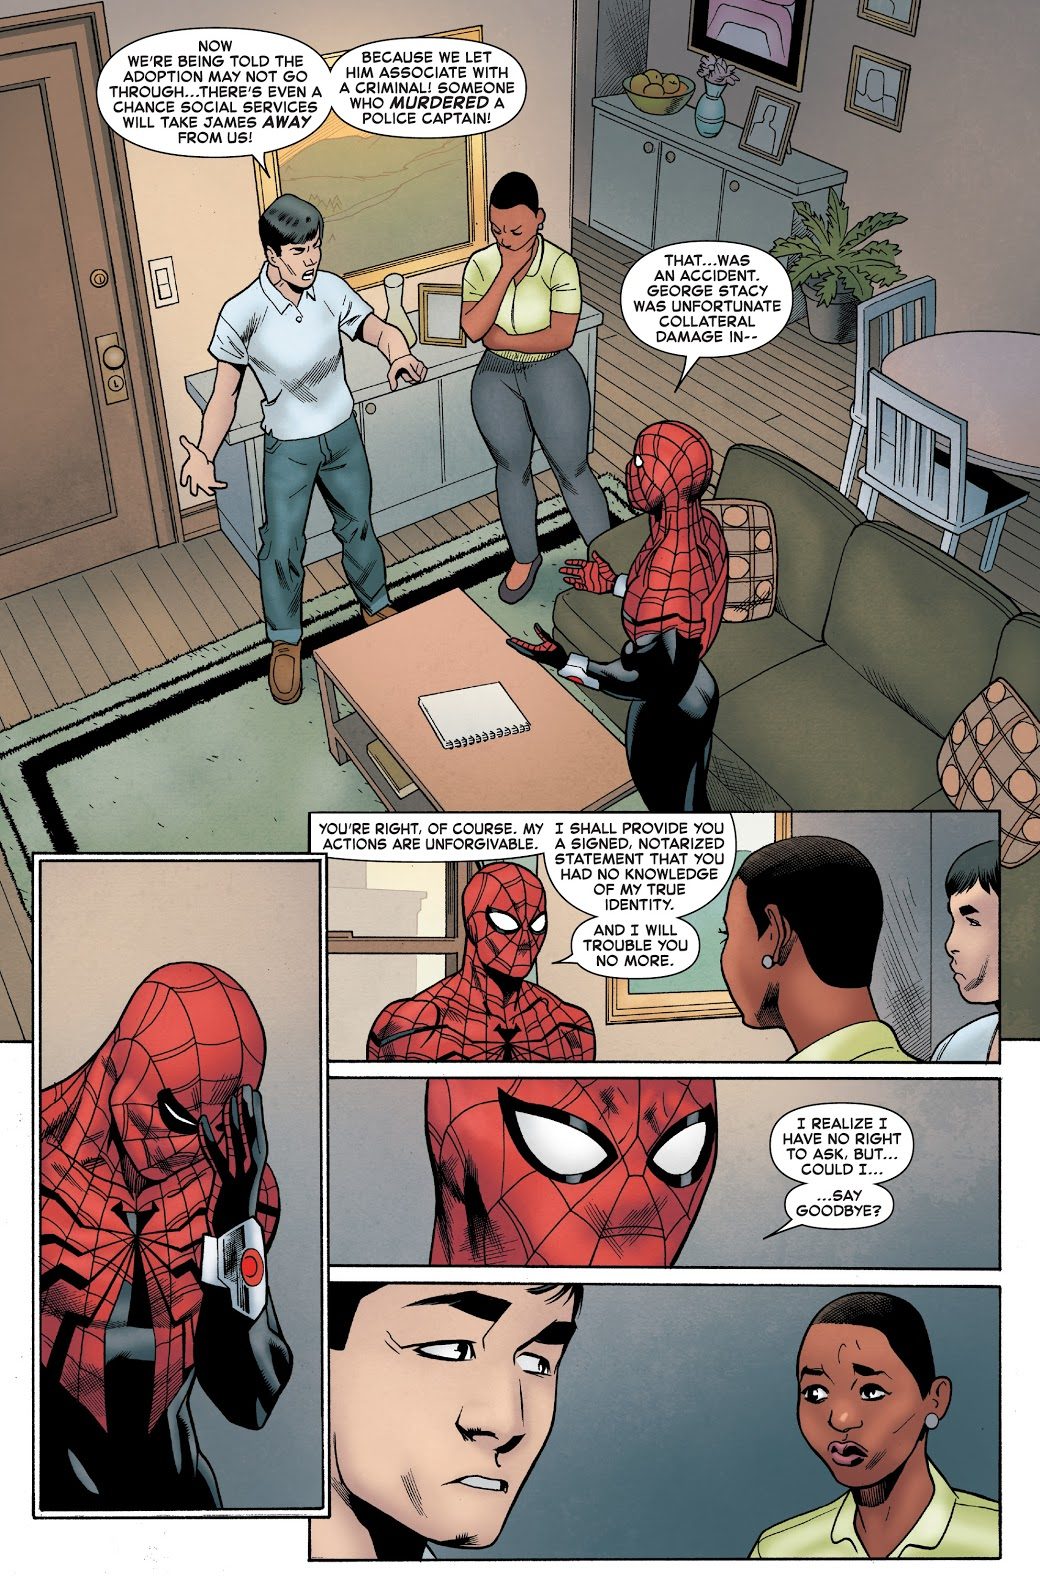 Superior Spider-Man Bonds With A Kid